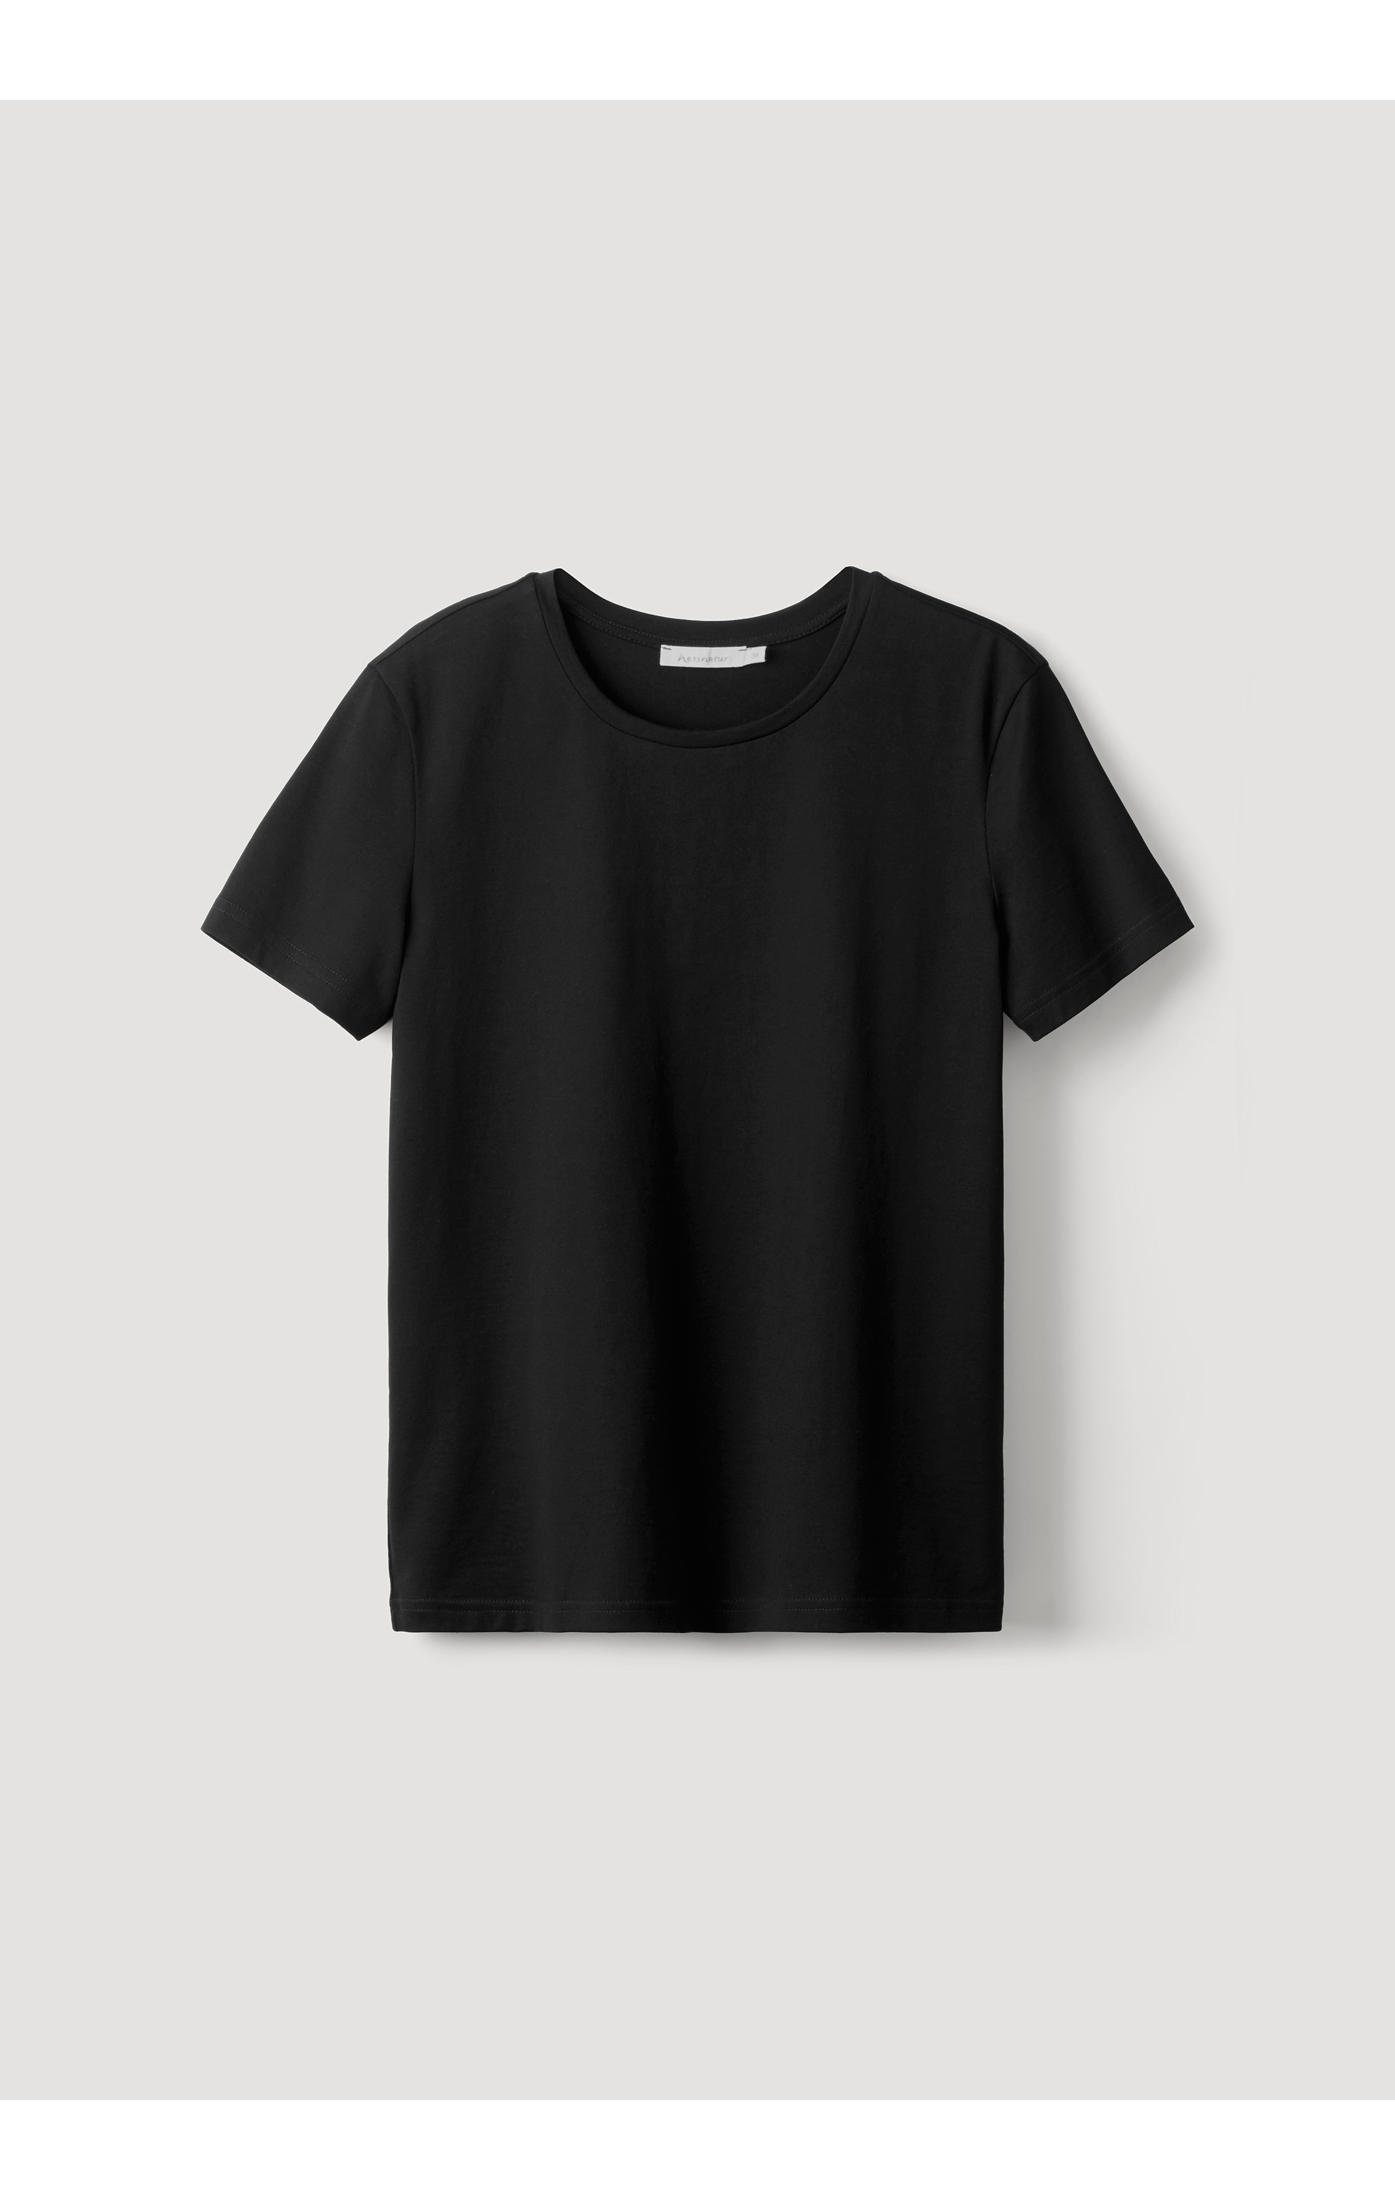 aus Kurzarm T-Shirt Hessnatur schwarz reiner Bio-Baumwolle